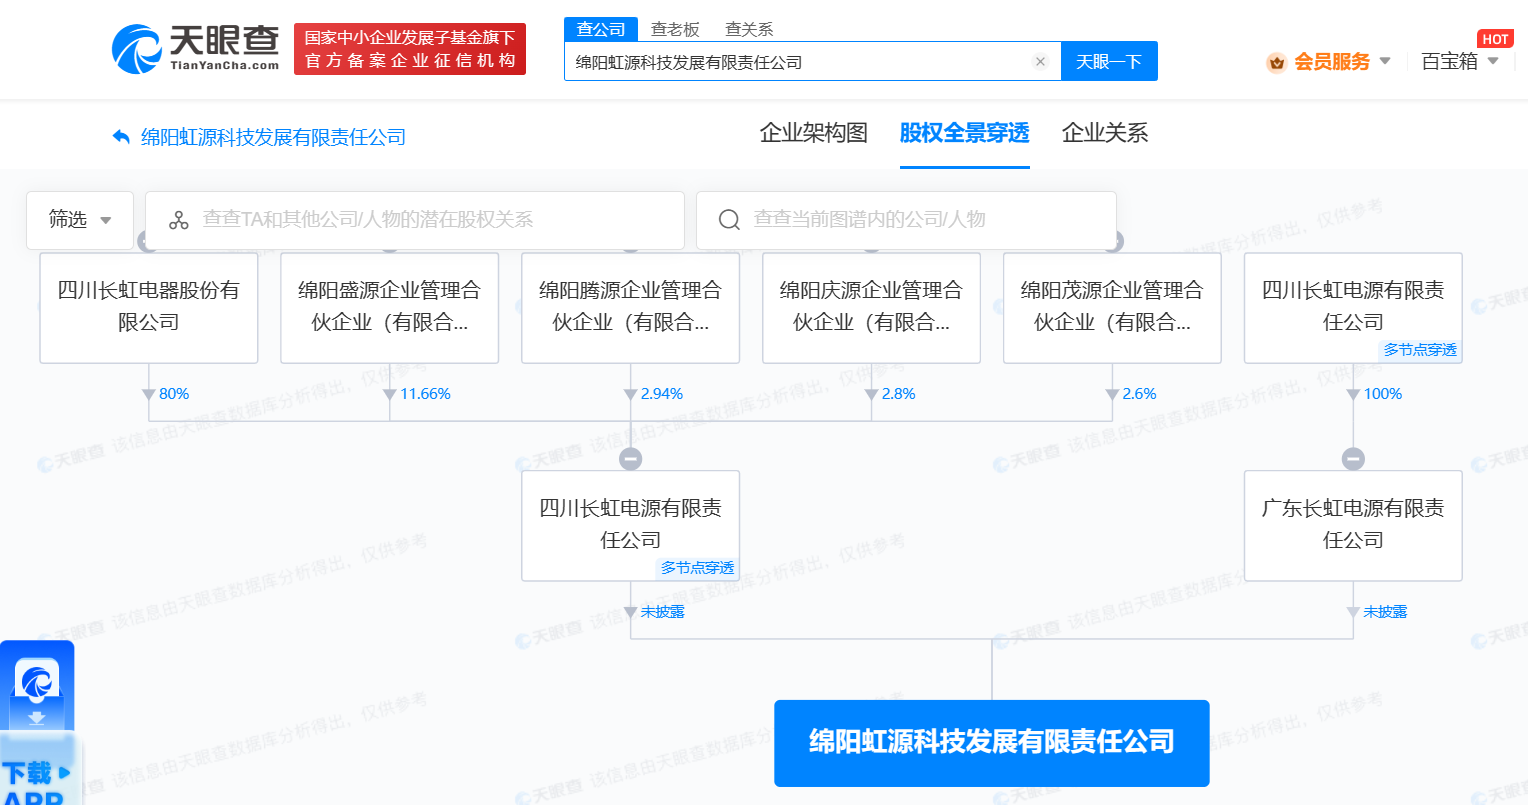 四川長虹在綿陽成立科技公司